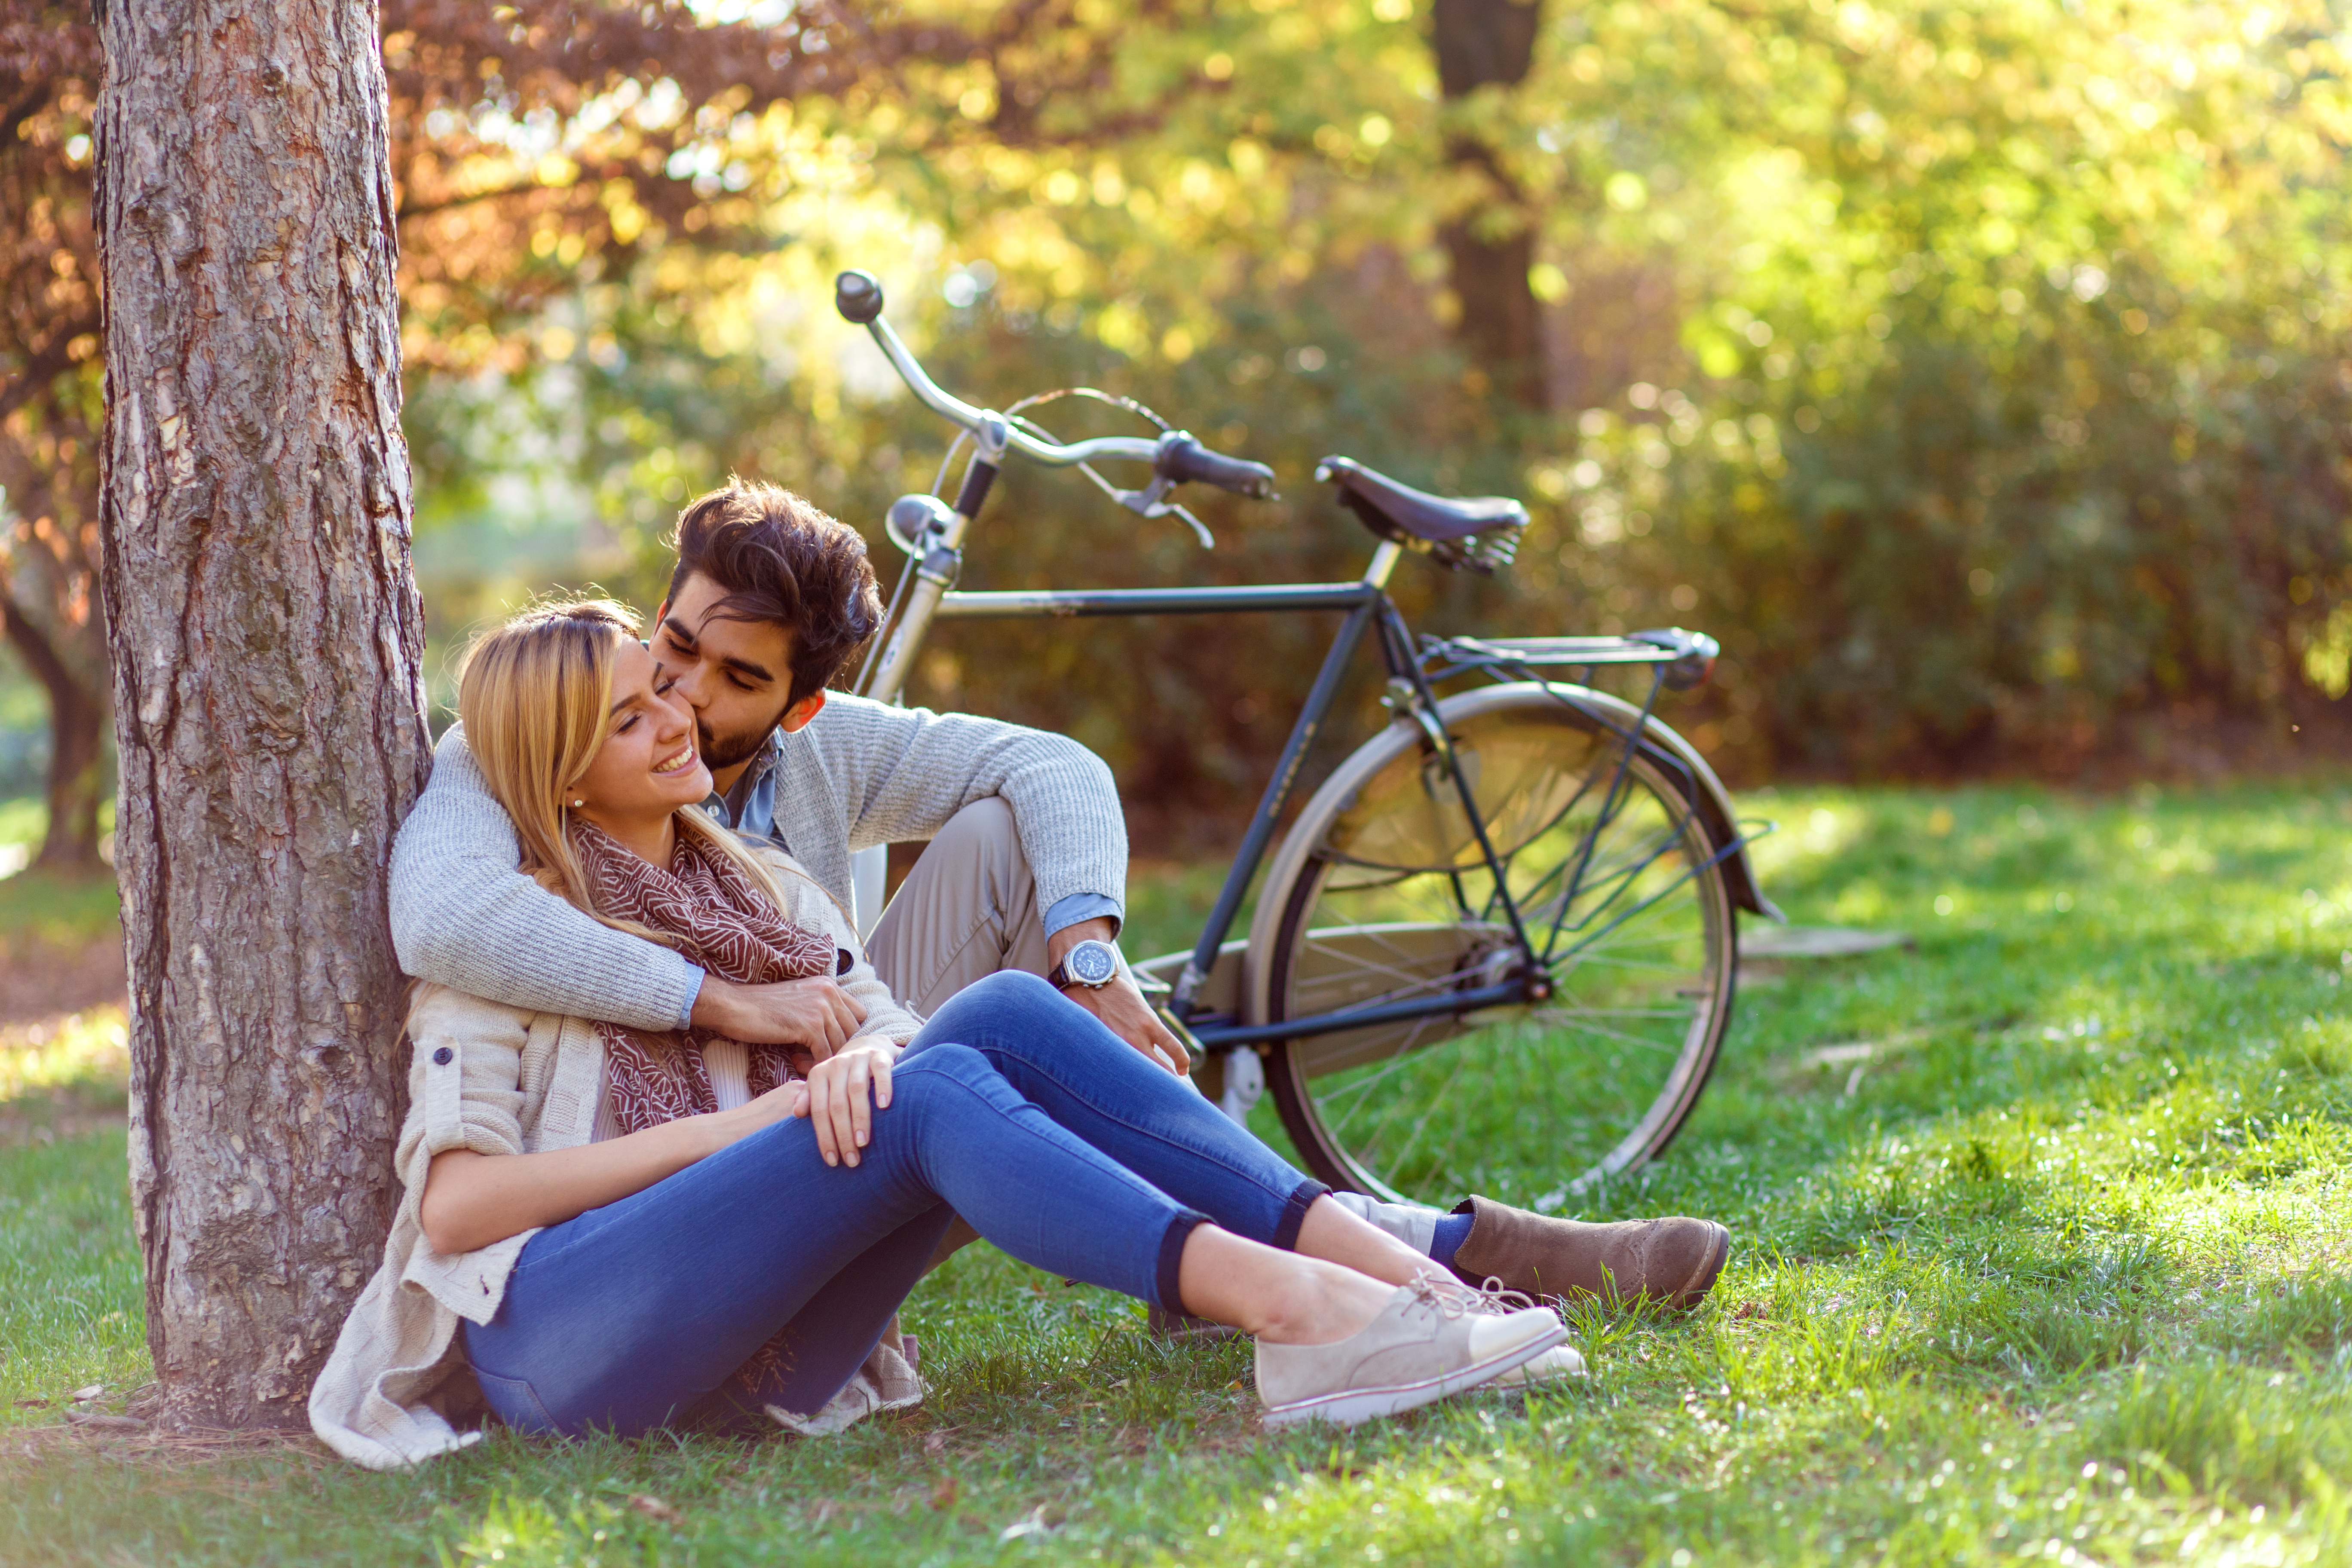 Un homme embrassant sa petite amie dans un parc | Source : Shutterstock